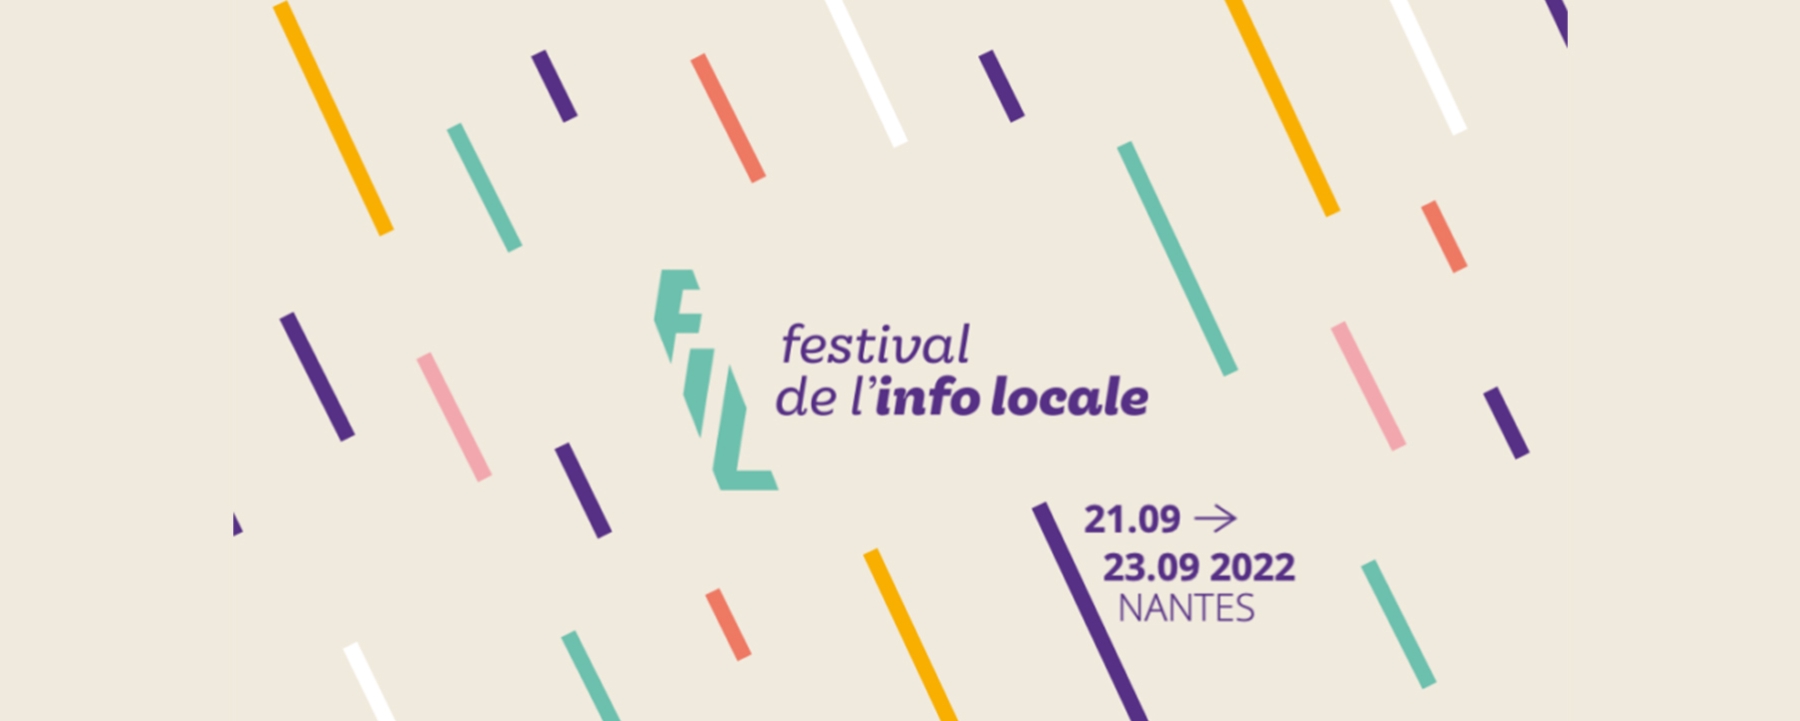 Festival de l'info locale